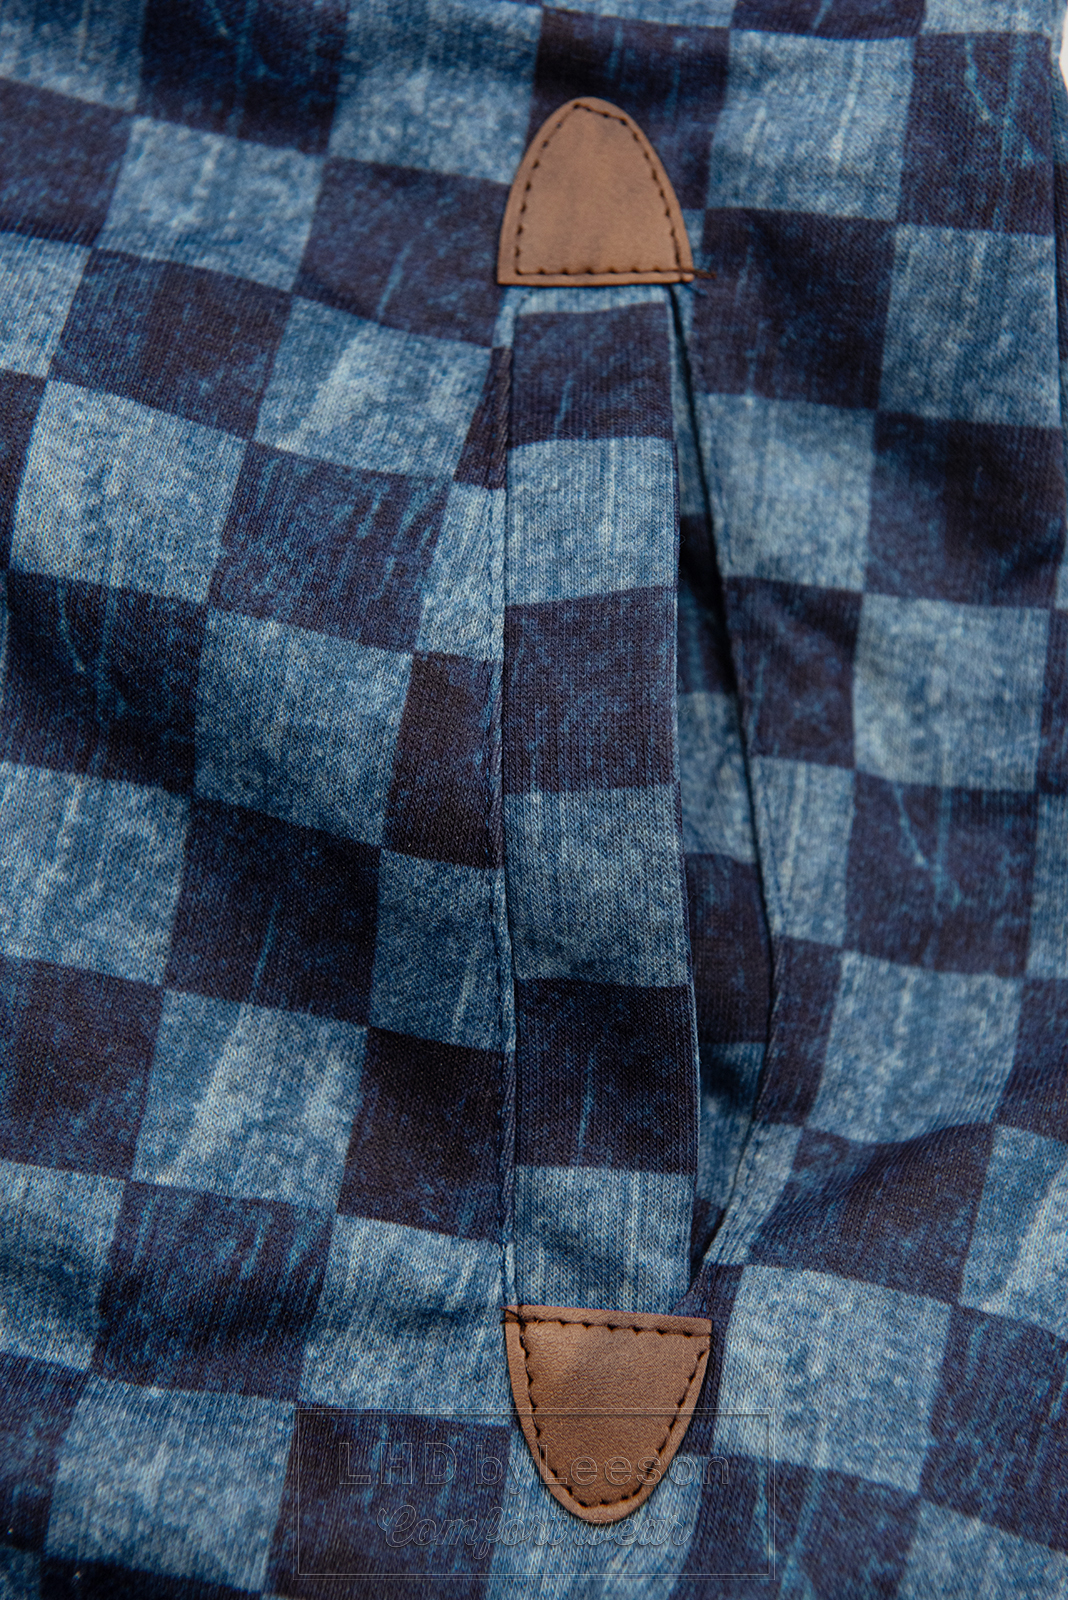 Ciemnoniebieska bluza z wzorem w szachownicę